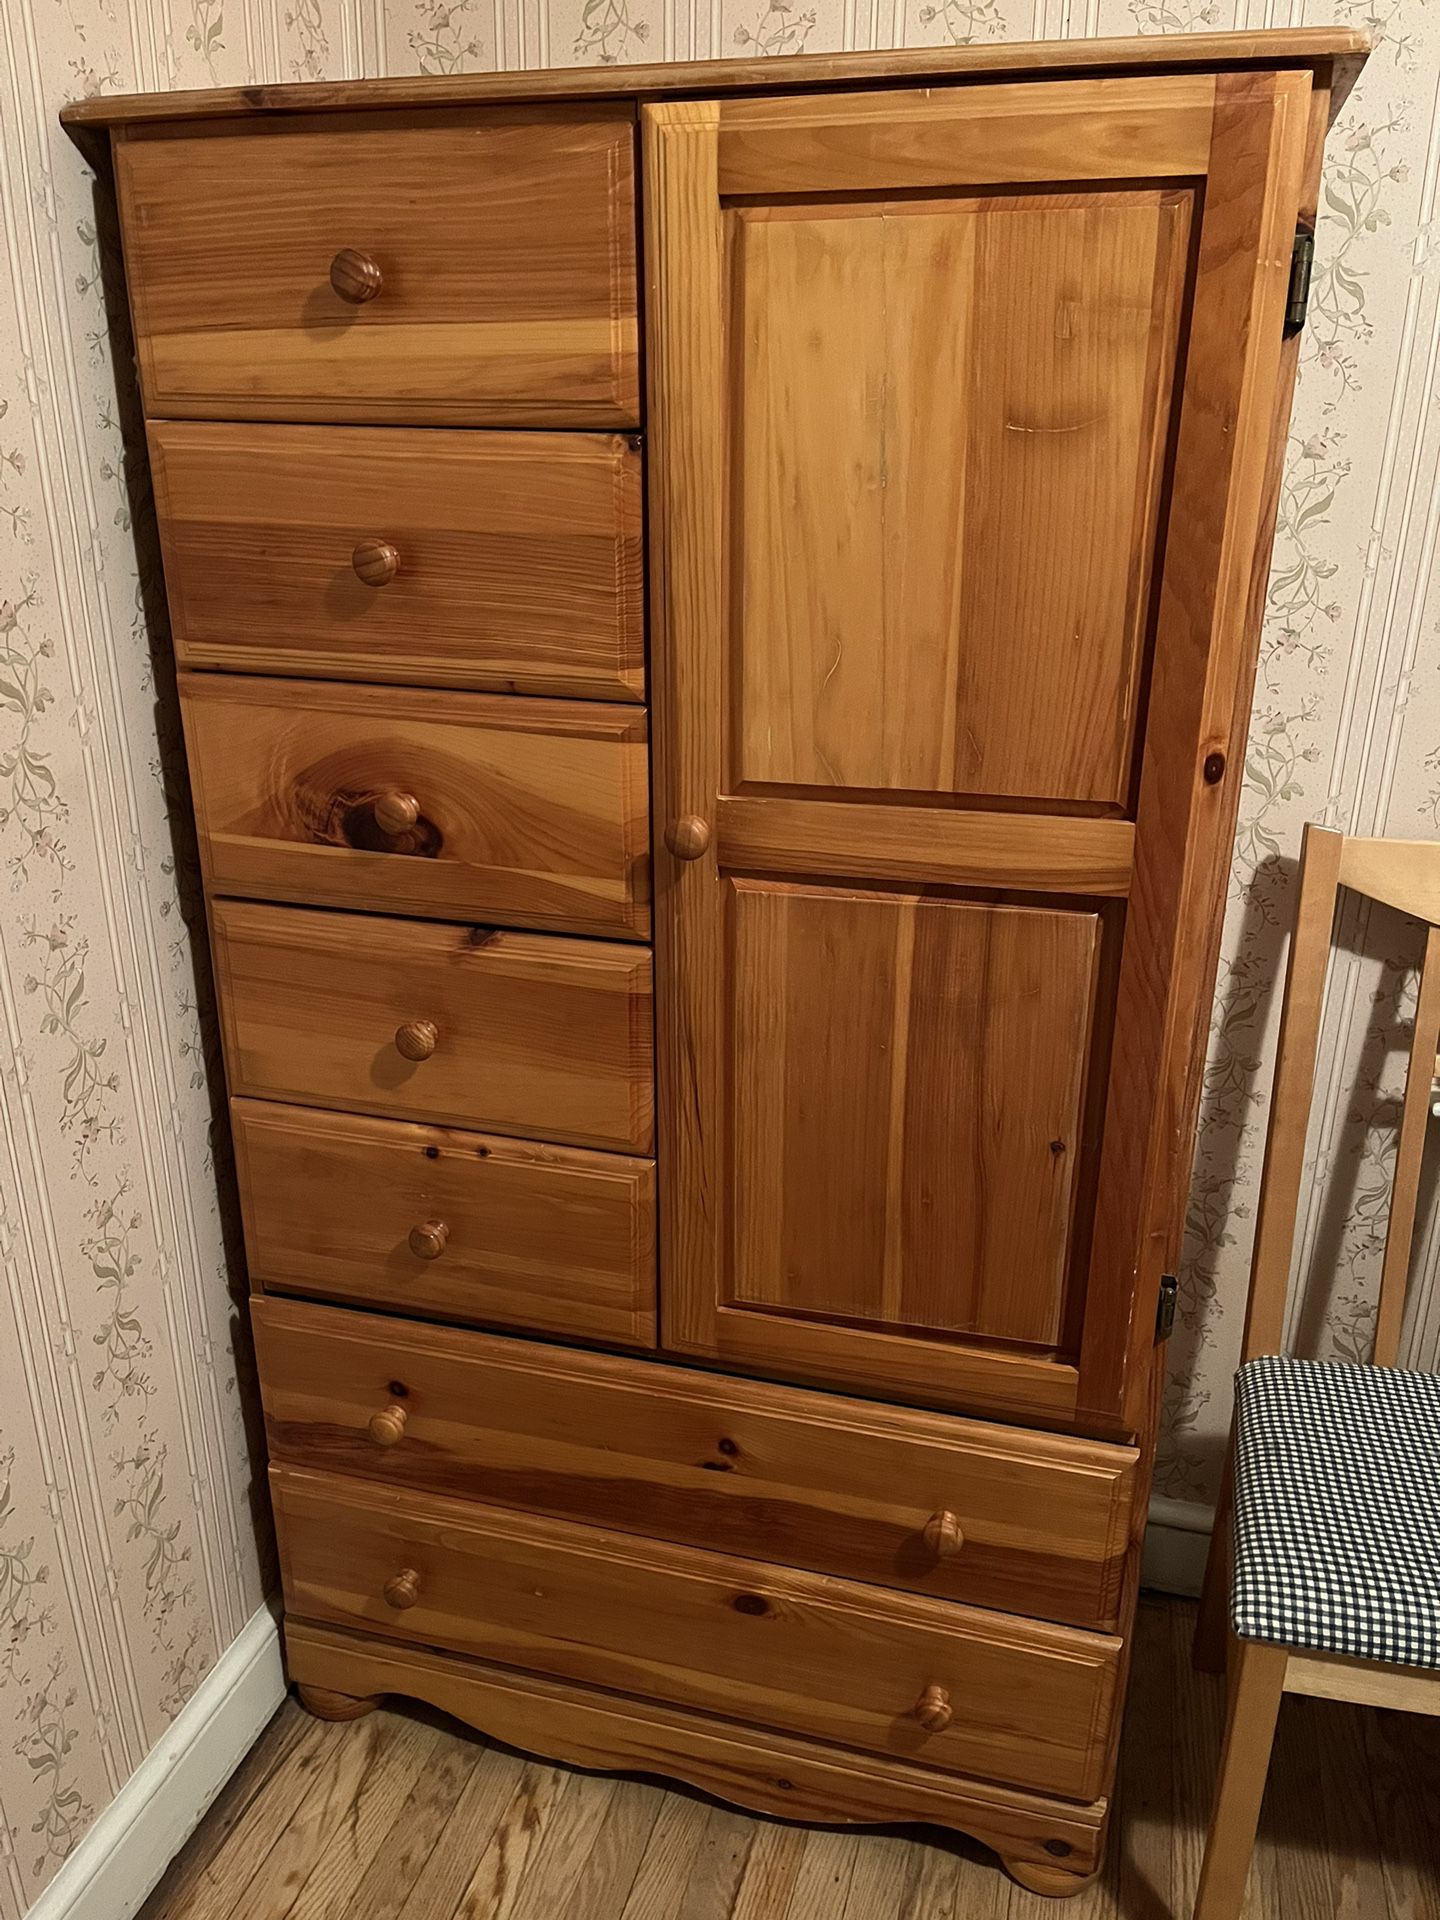 Wardrobe Cabinet Dresser Pine Wood